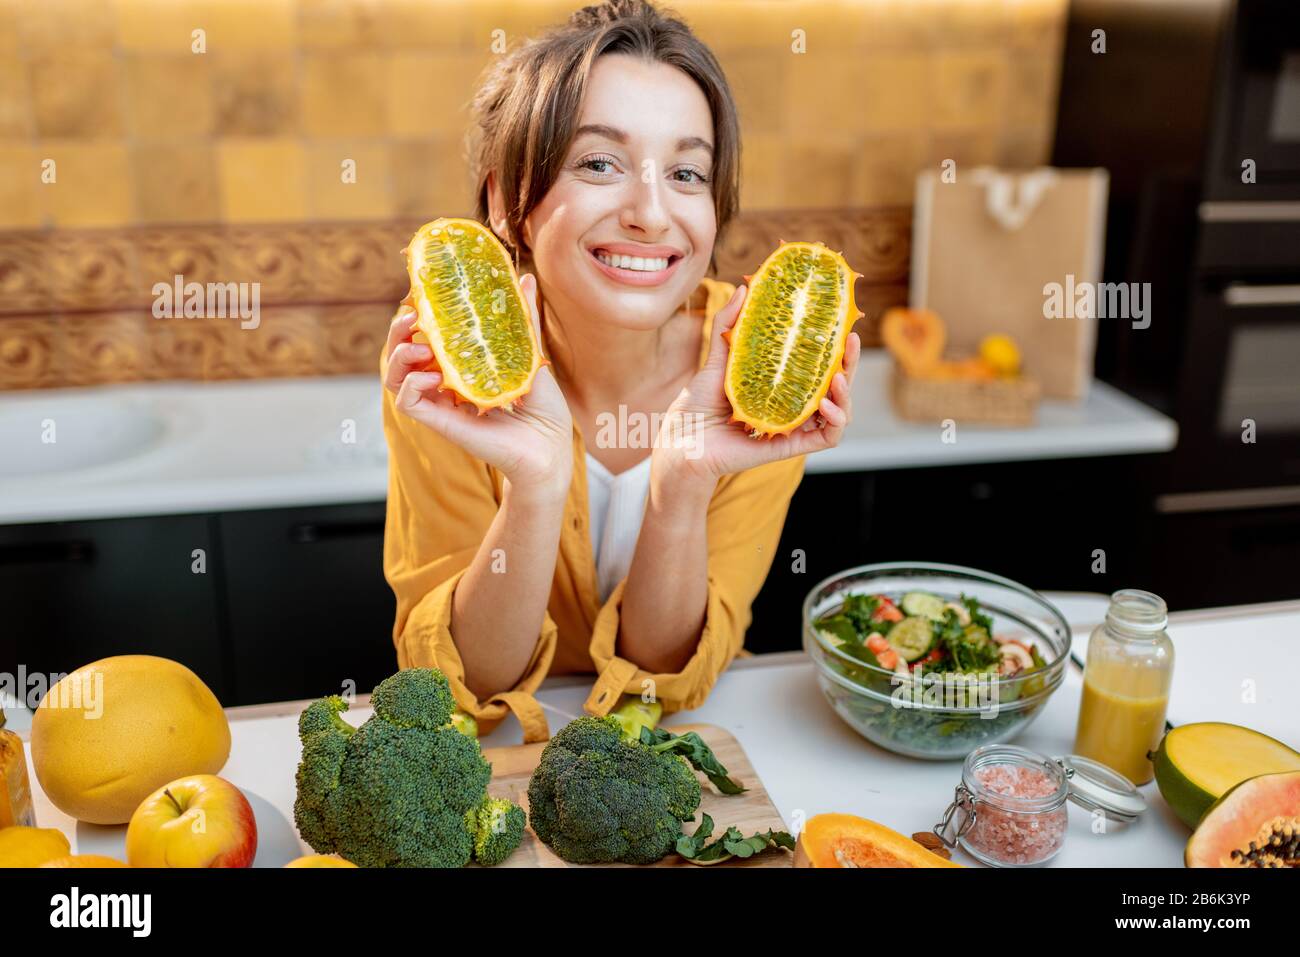 Ritratto di una donna gioiosa con varietà di frutta esotica e verdure in cucina, tenendo a fette il cetriis metuliferus. Concetto di vegetarianismo e di alimentazione sana Foto Stock